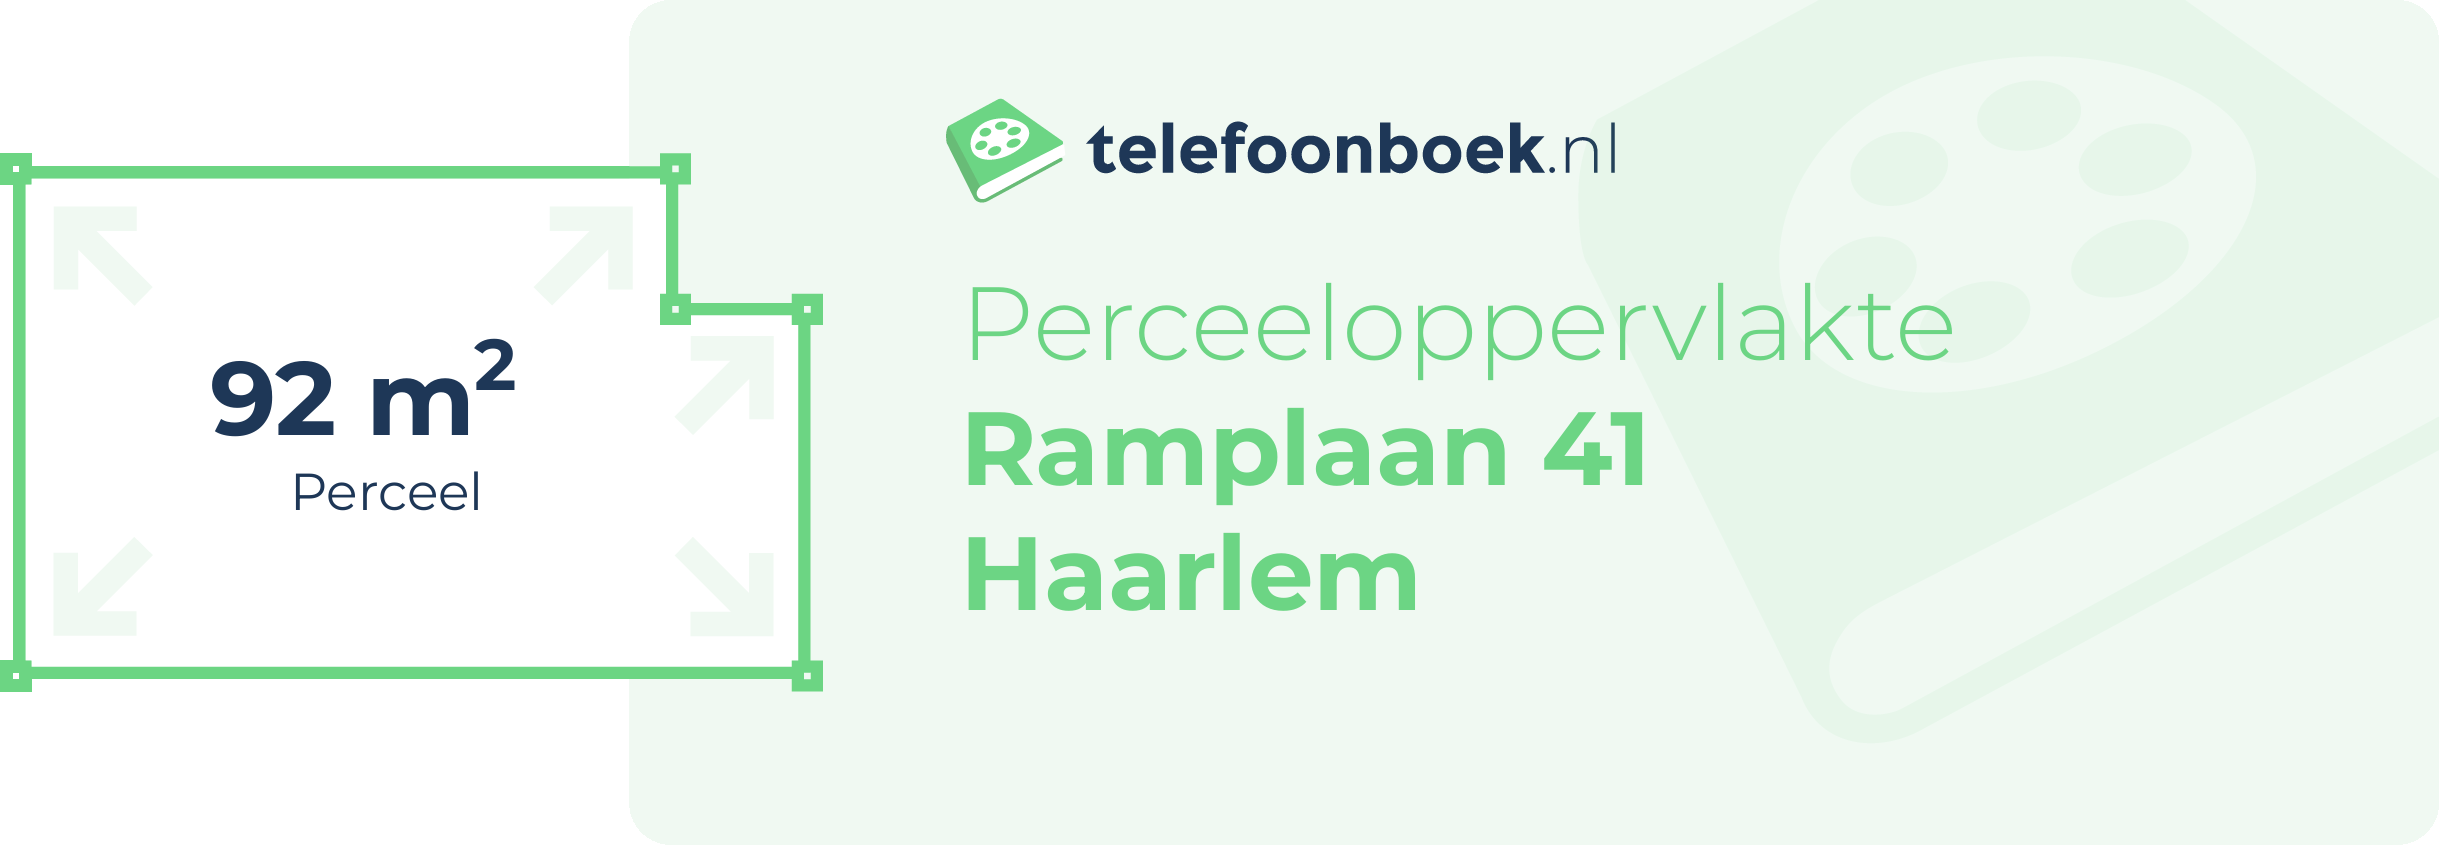 Perceeloppervlakte Ramplaan 41 Haarlem